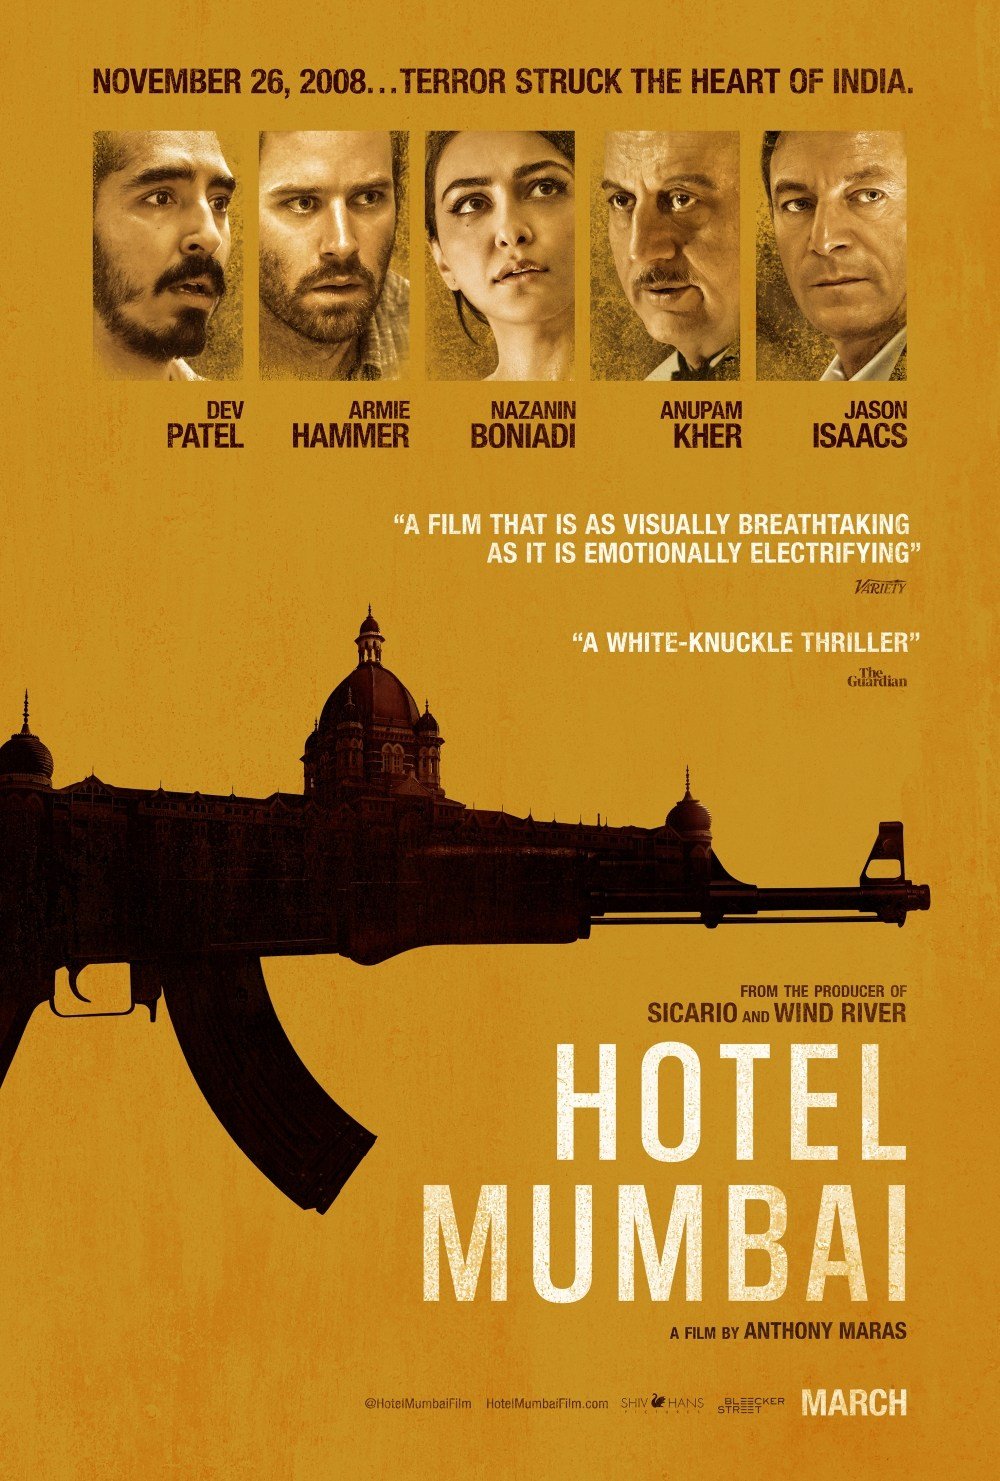 孟買酒店電影圖片 - poster_1551704549.jpg